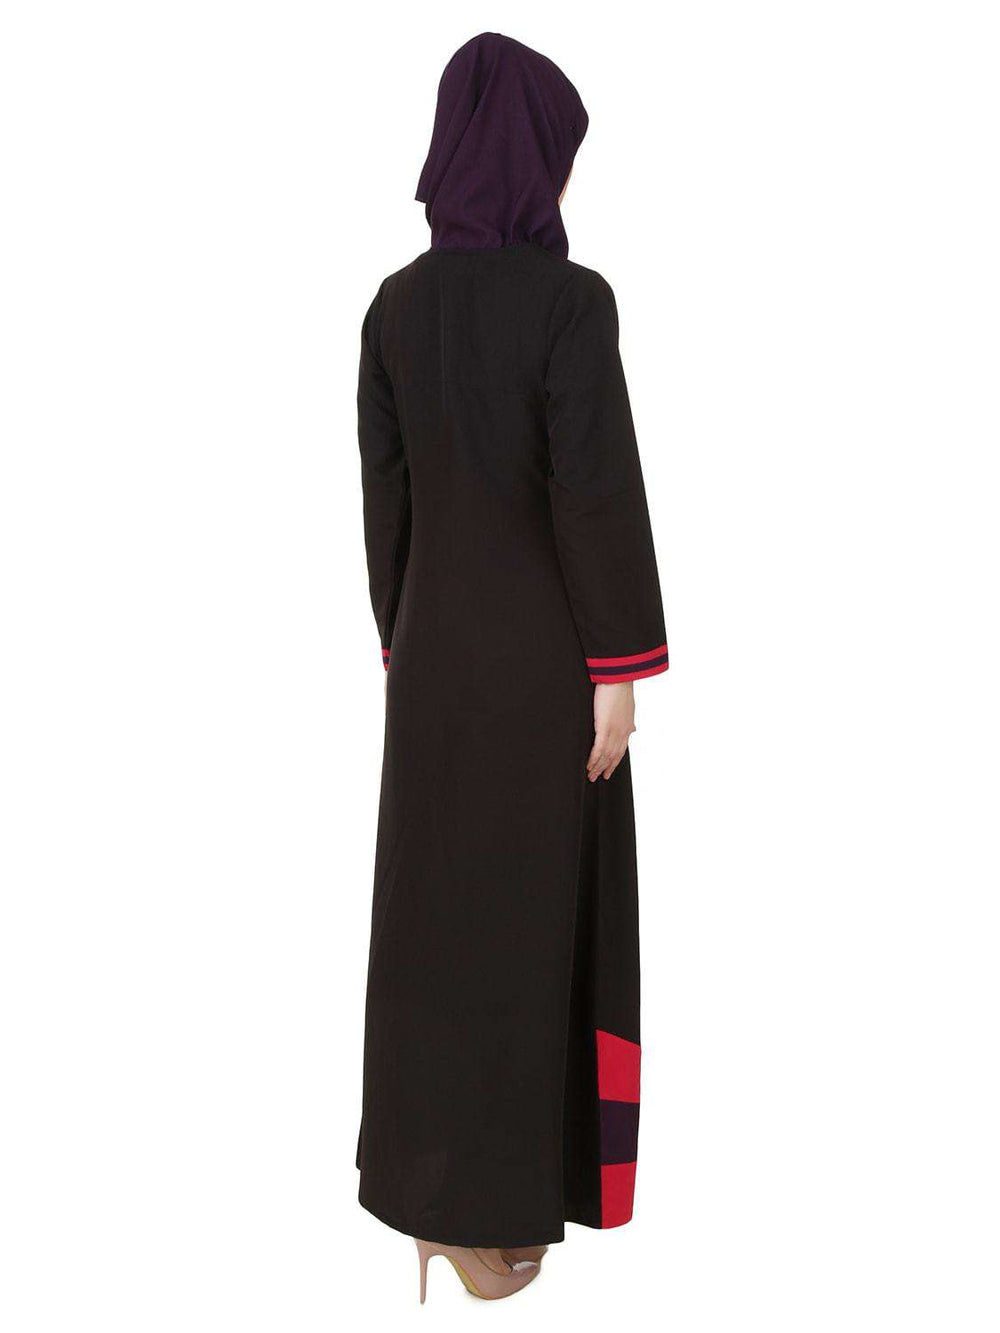 Shimah Black Abaya